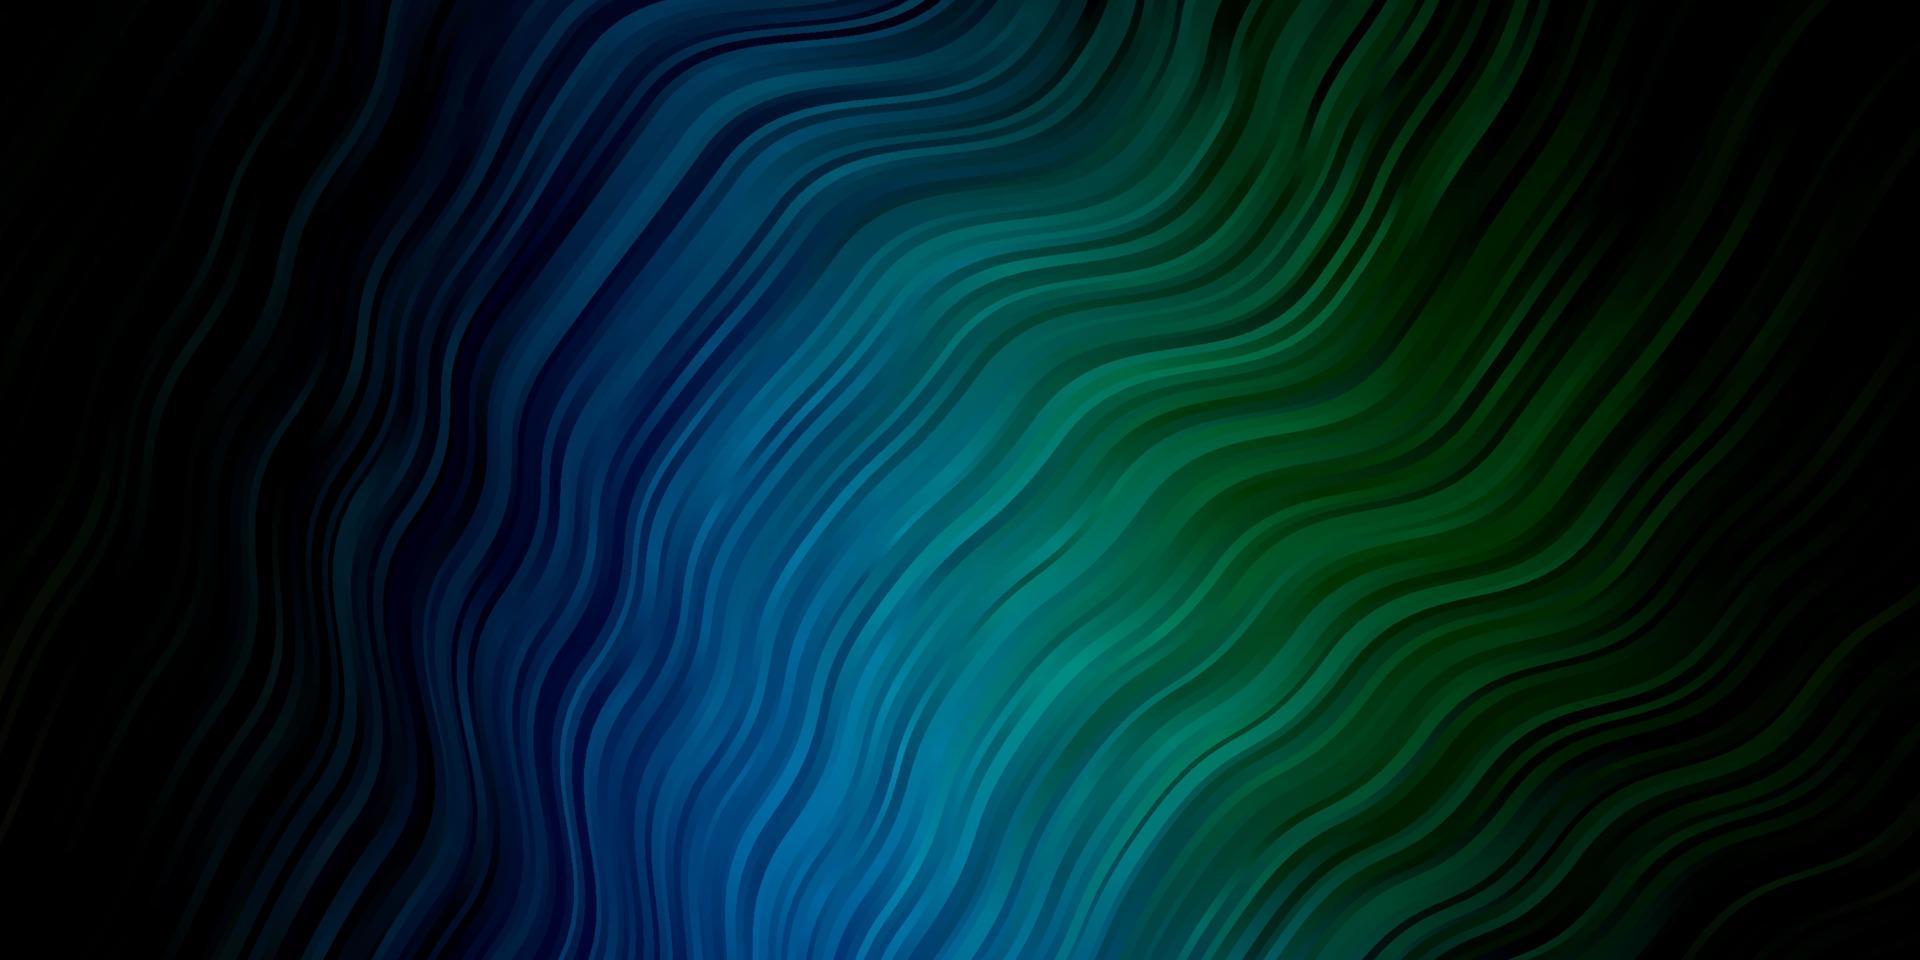 padrão de vetor azul e verde escuro com linhas curvas.